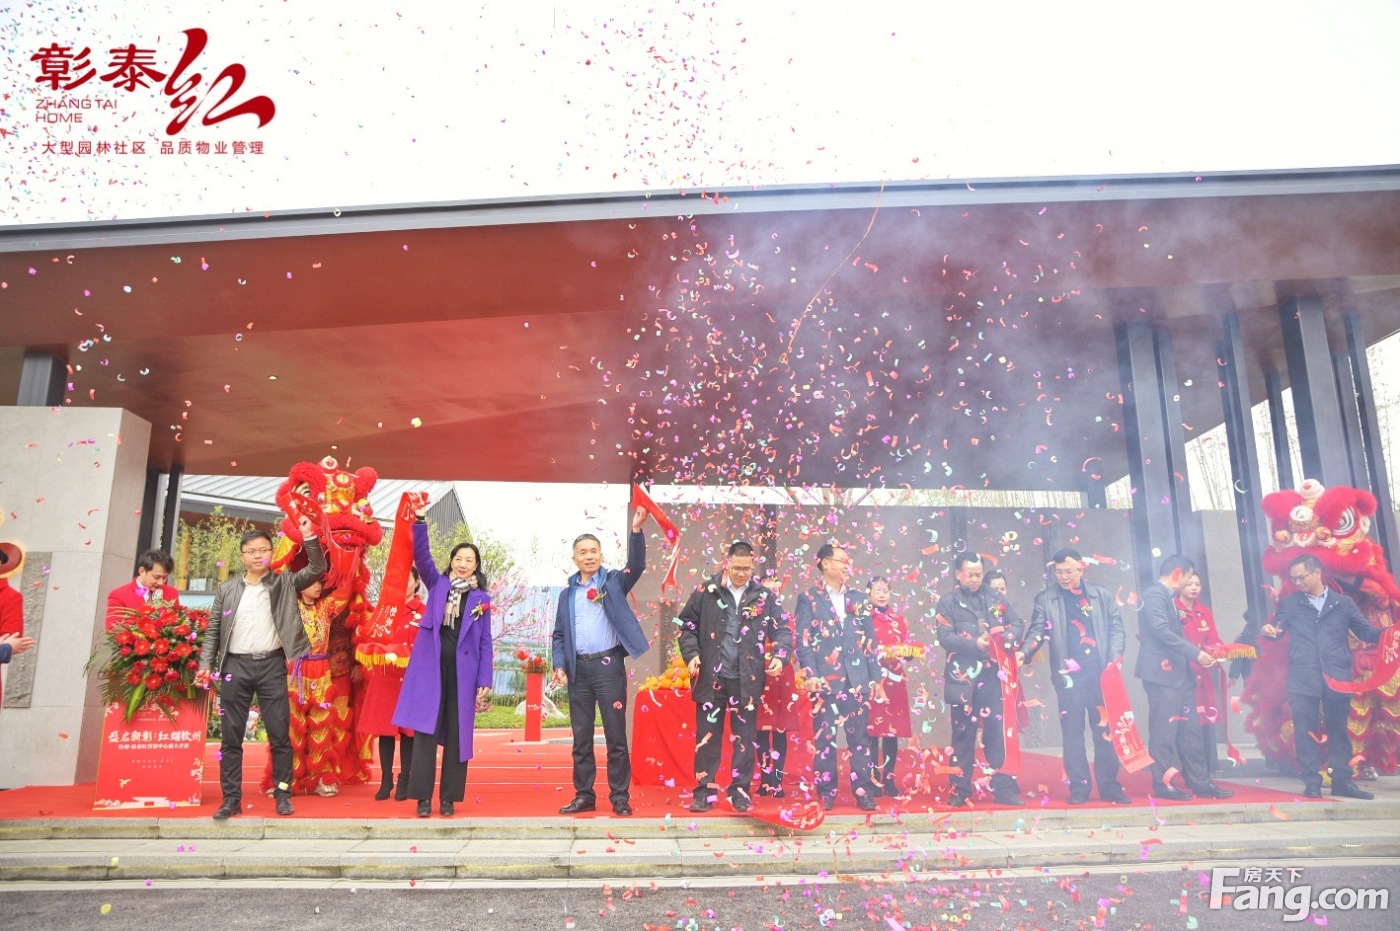 万众瞩目 红耀钦州 | 钦州·彰泰红营销中心至美开放！